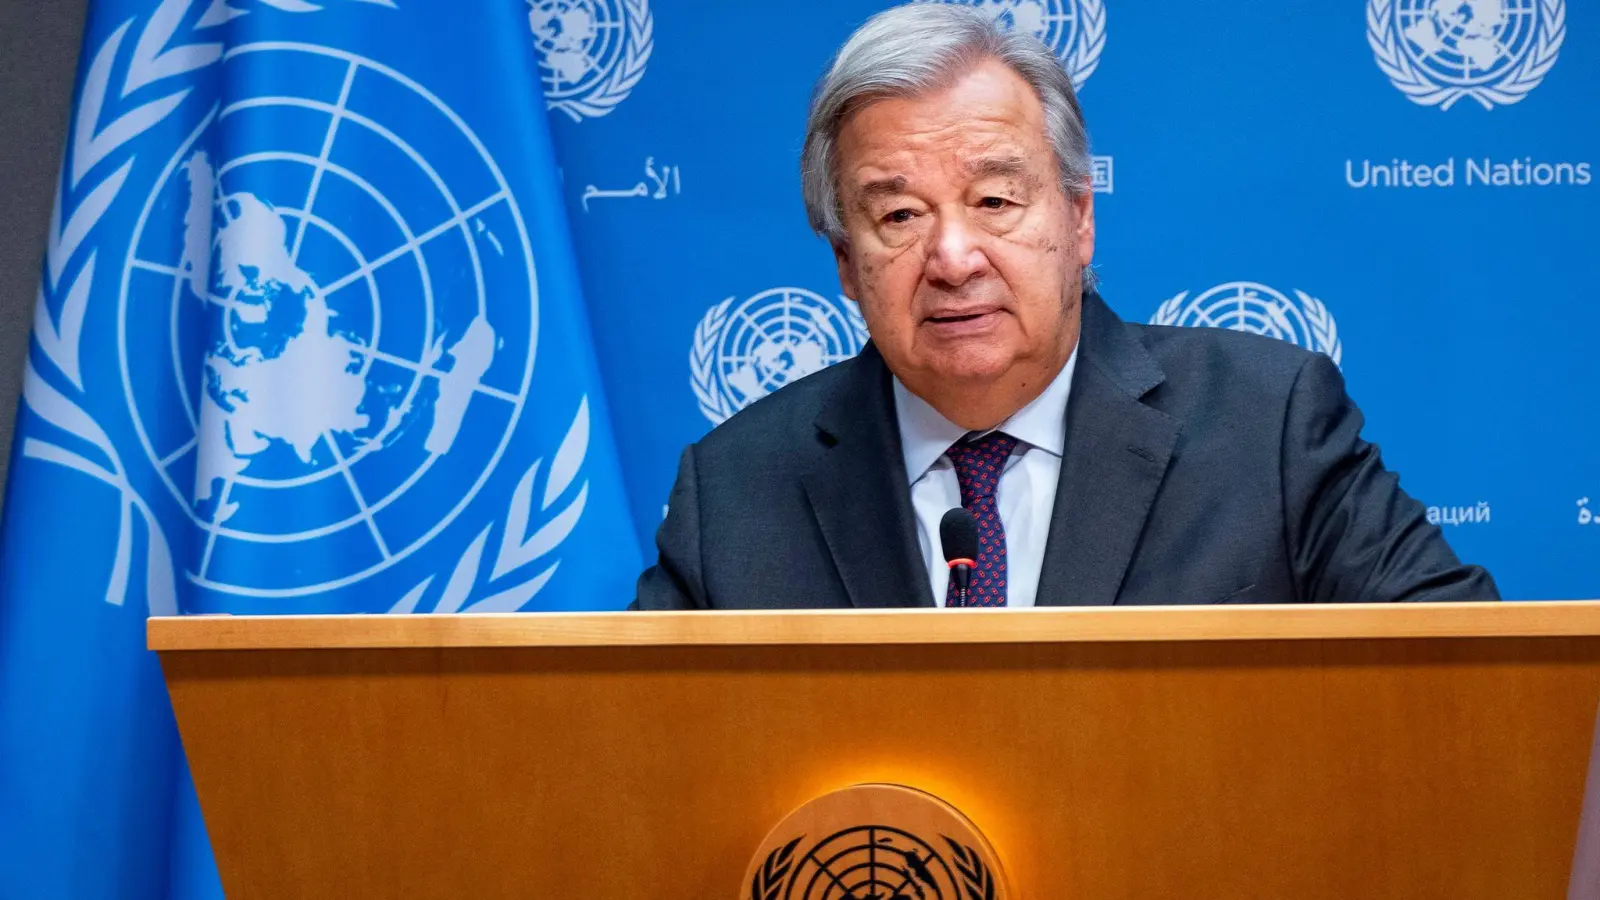 UN-Generalsekretär António Guterres stand für seine Äußerungen zum Gaza-Krieg mehrfach in der Kritik. (Foto: Craig Ruttle/AP/dpa)